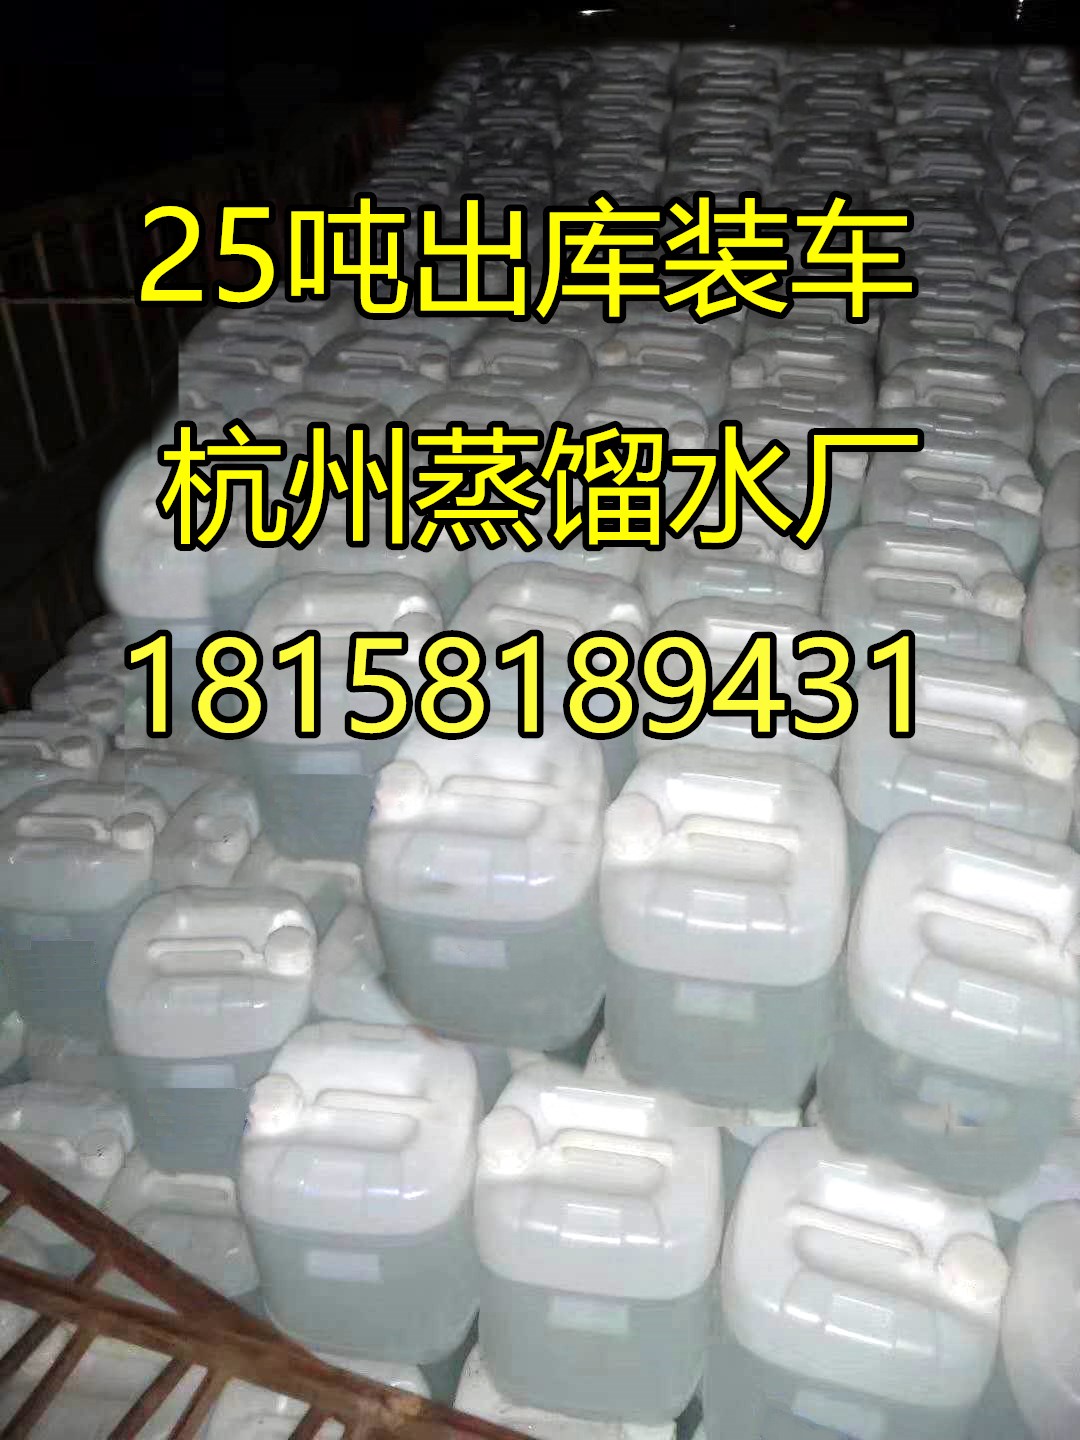 杭州市叉车电瓶补充液叉车电瓶水水电瓶厂家叉车电瓶补充液叉车电瓶水水电瓶补充原液